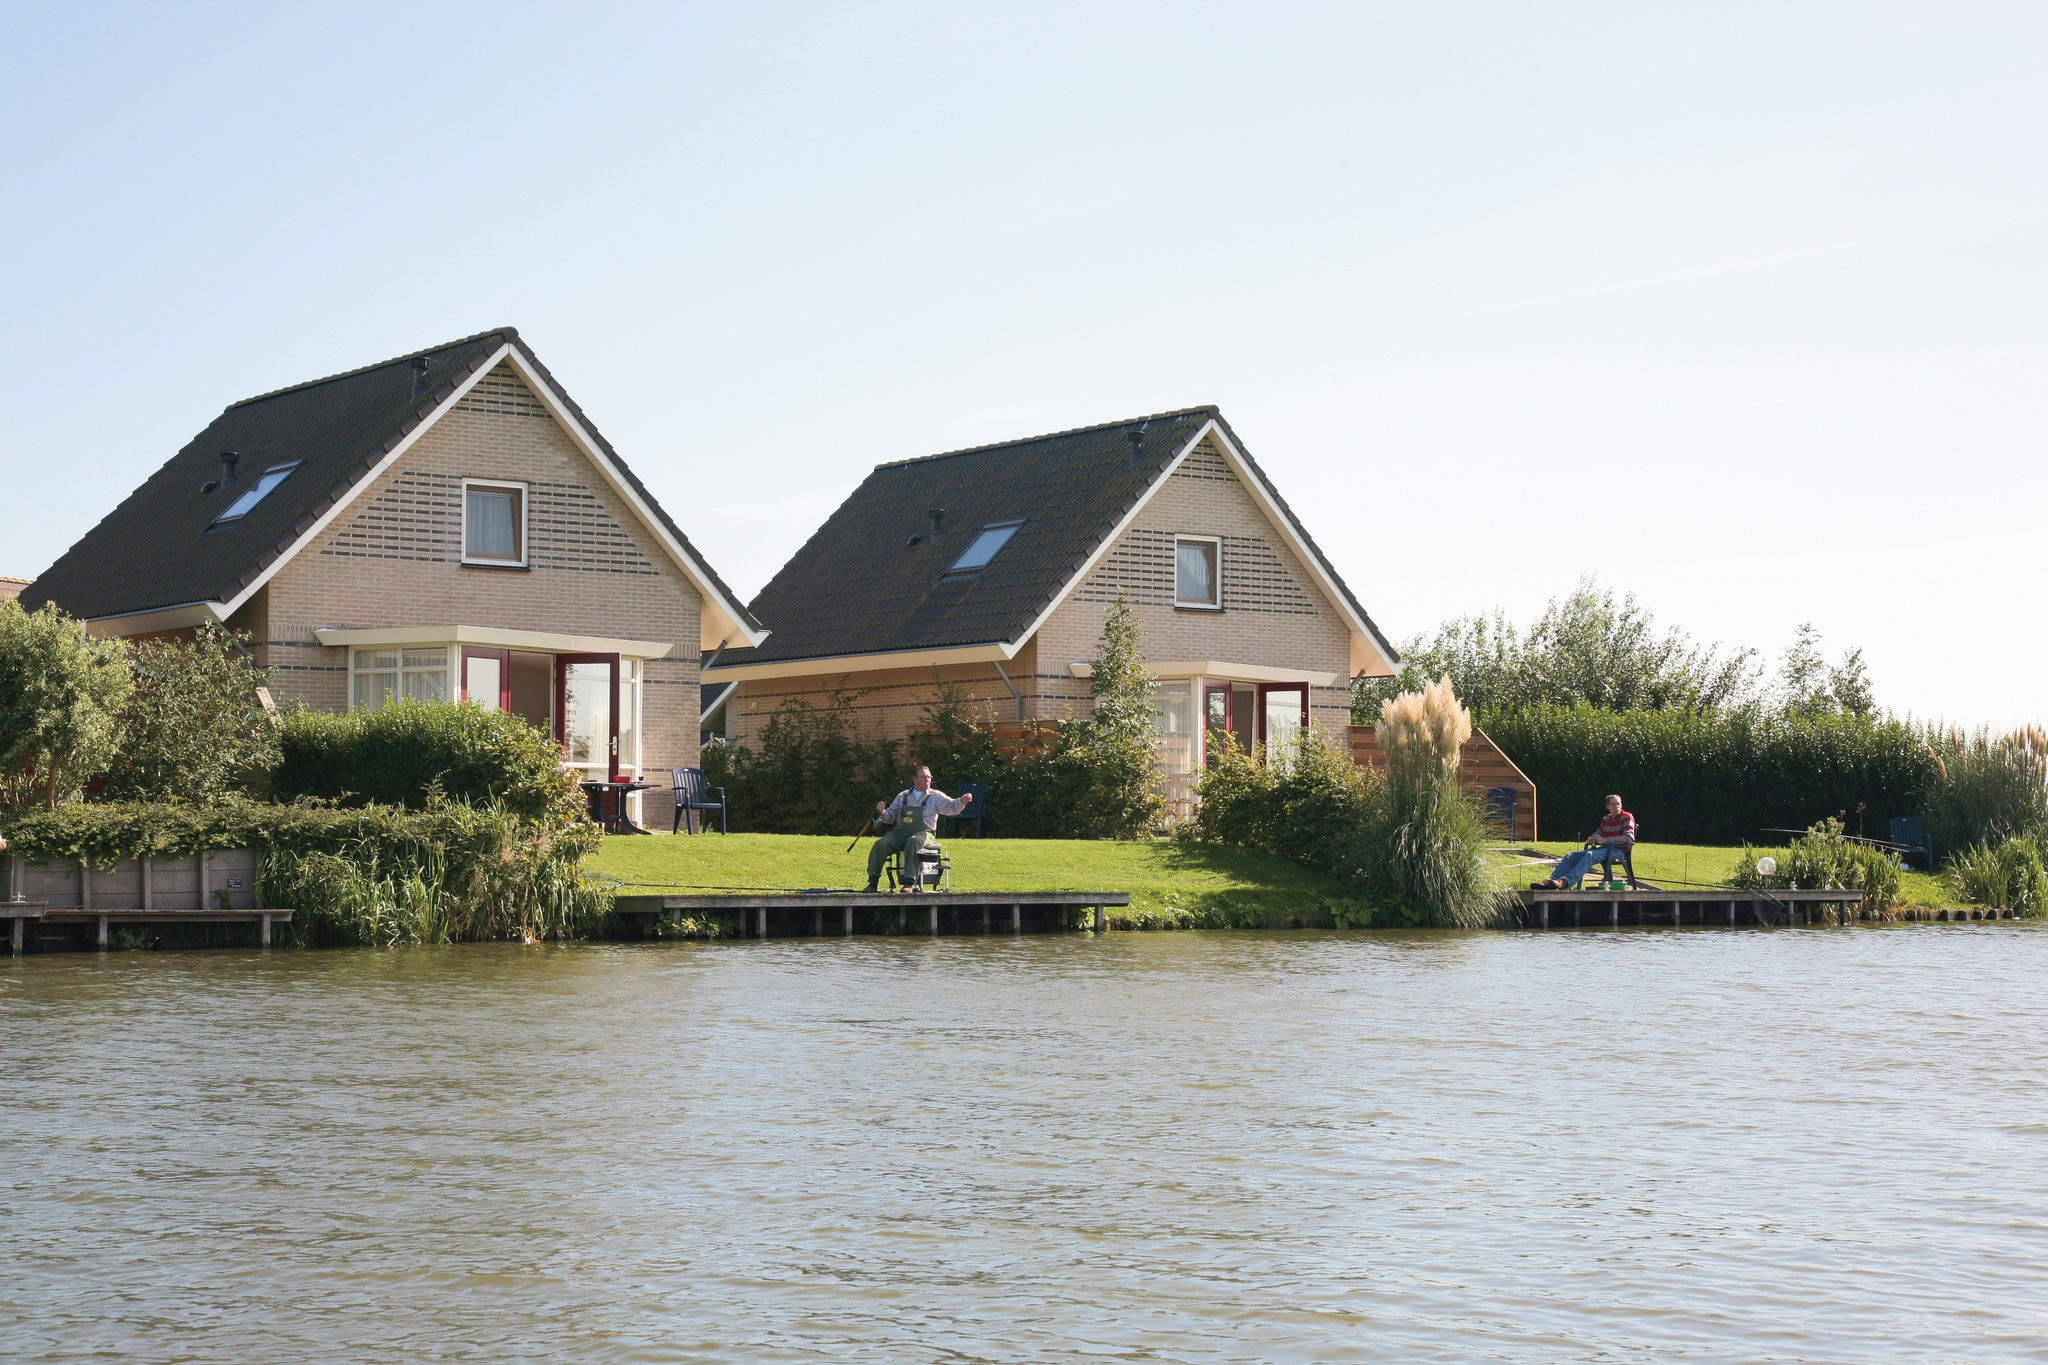 Schönes Haus mit Steg am Binnenwasser, nahe dem IJsselmeer